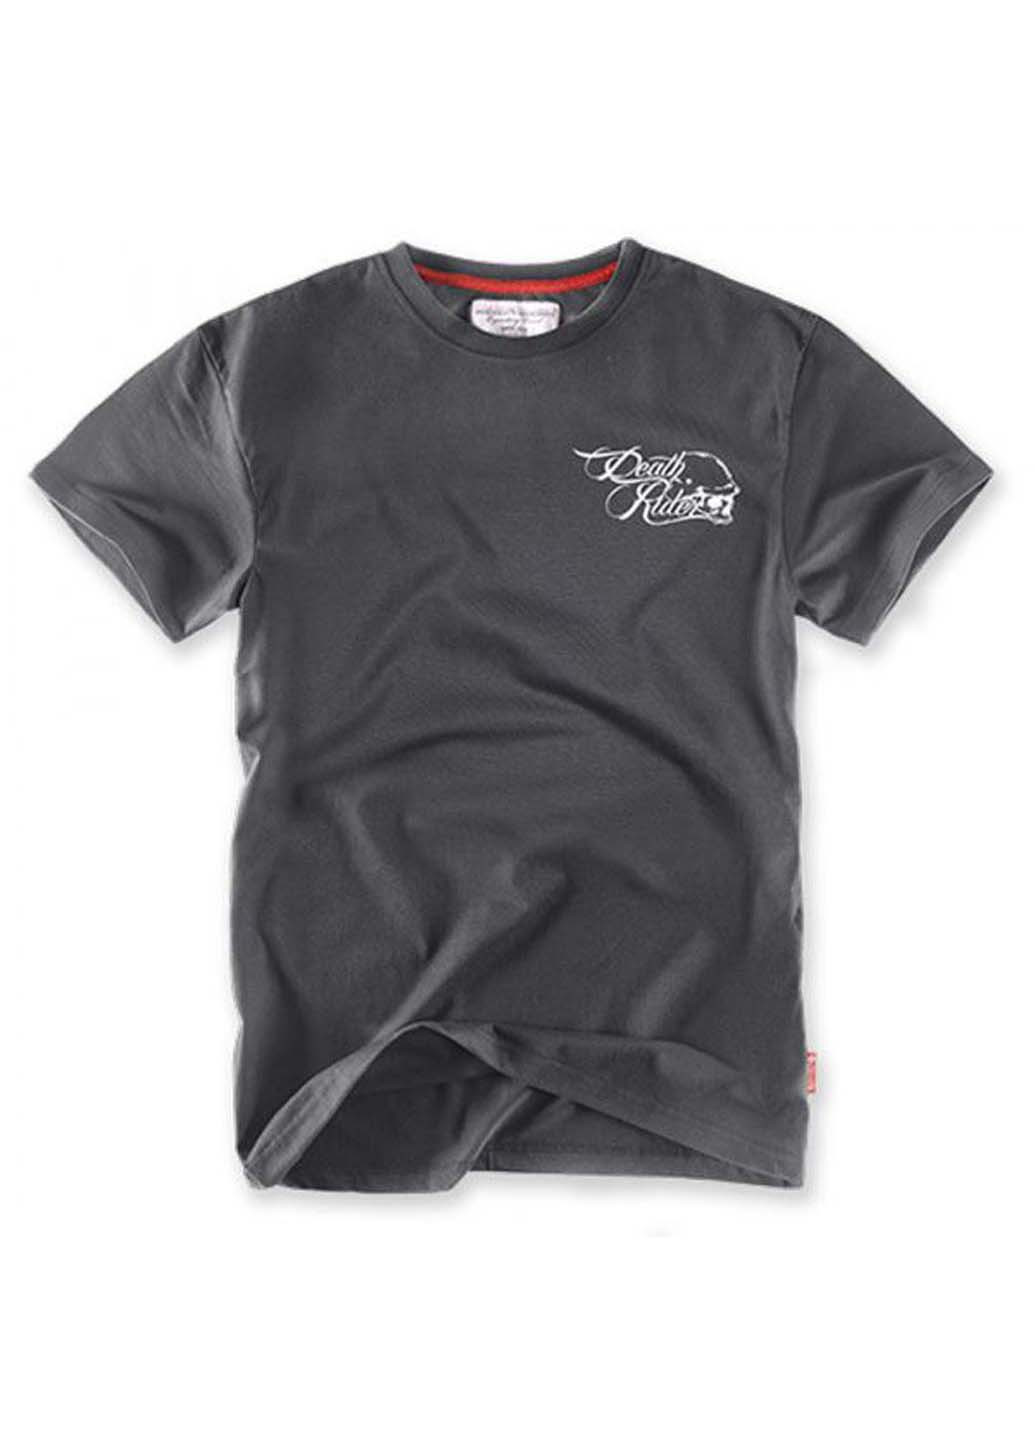 Темно-серая футболка Dobermans Aggressive